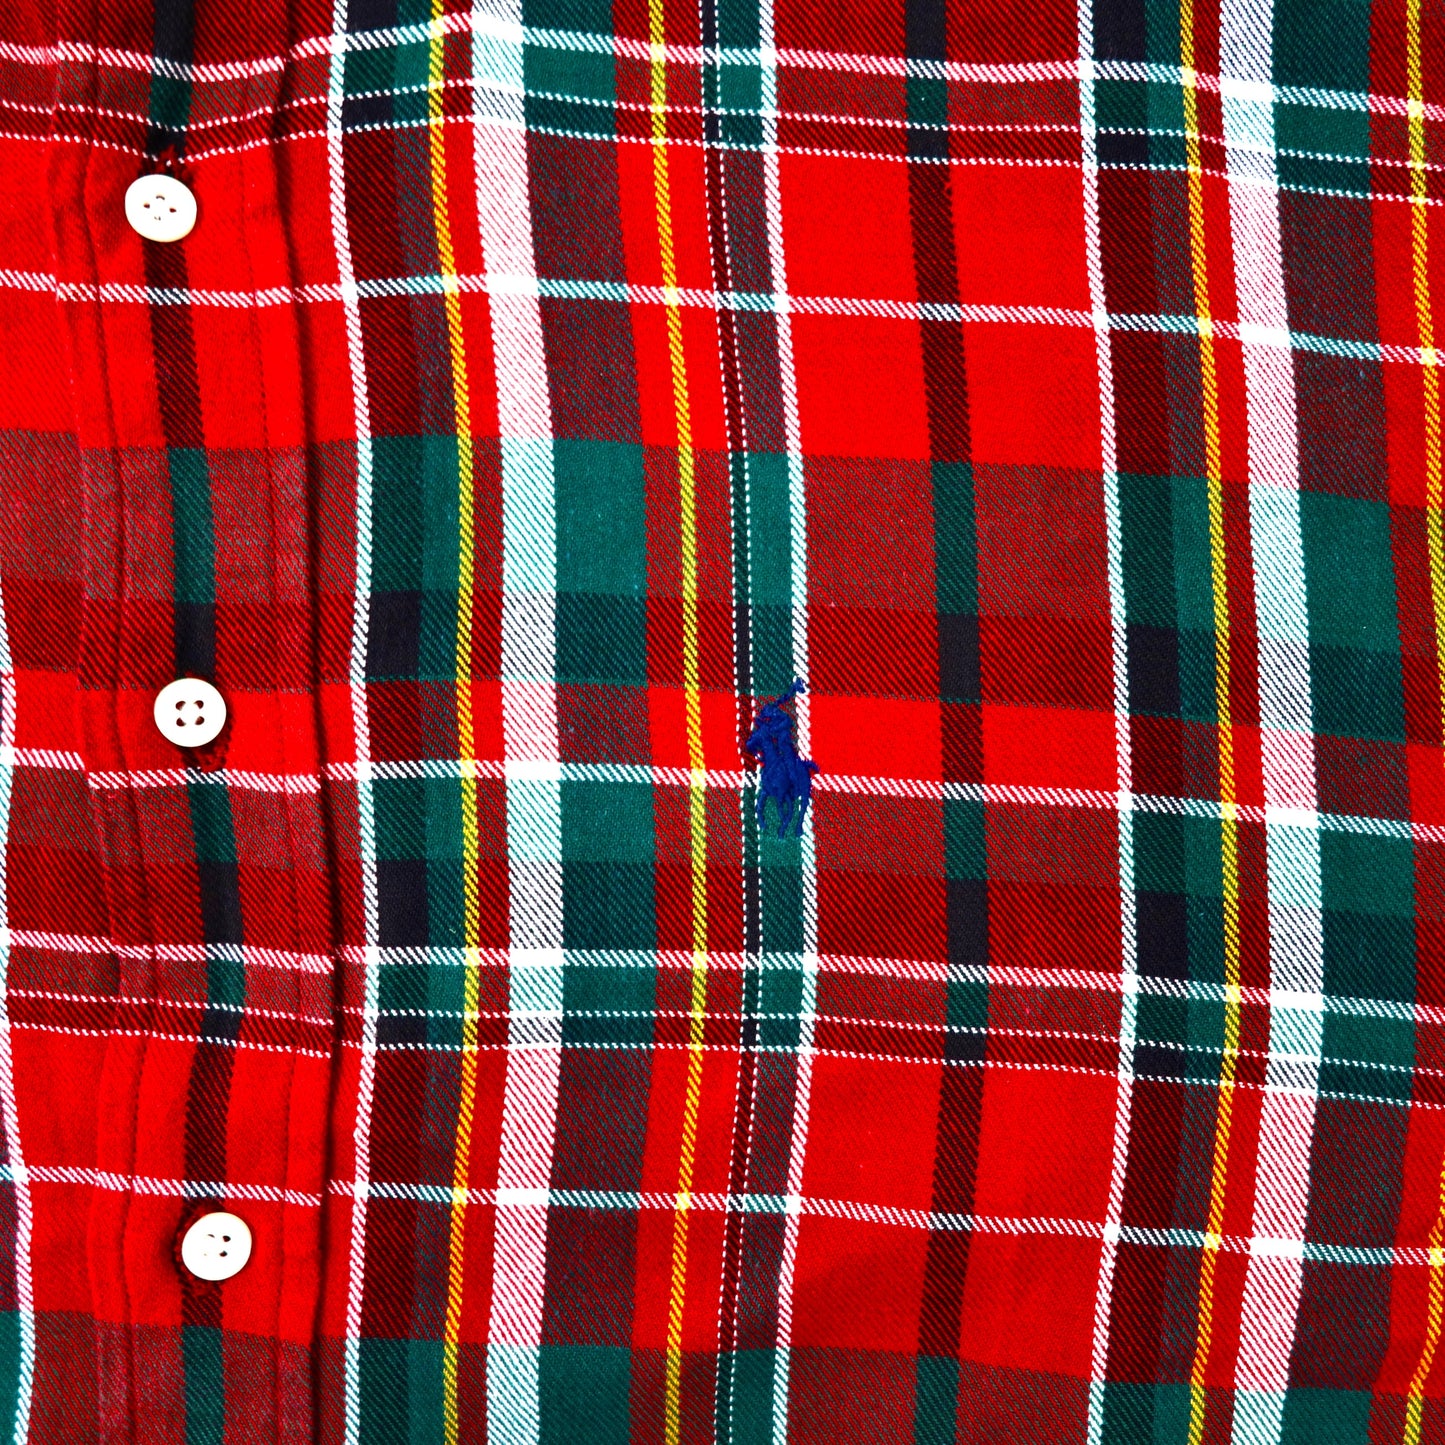 Ralph Lauren ボタンダウンシャツ L レッド スモールポニー BLAIRE チェック